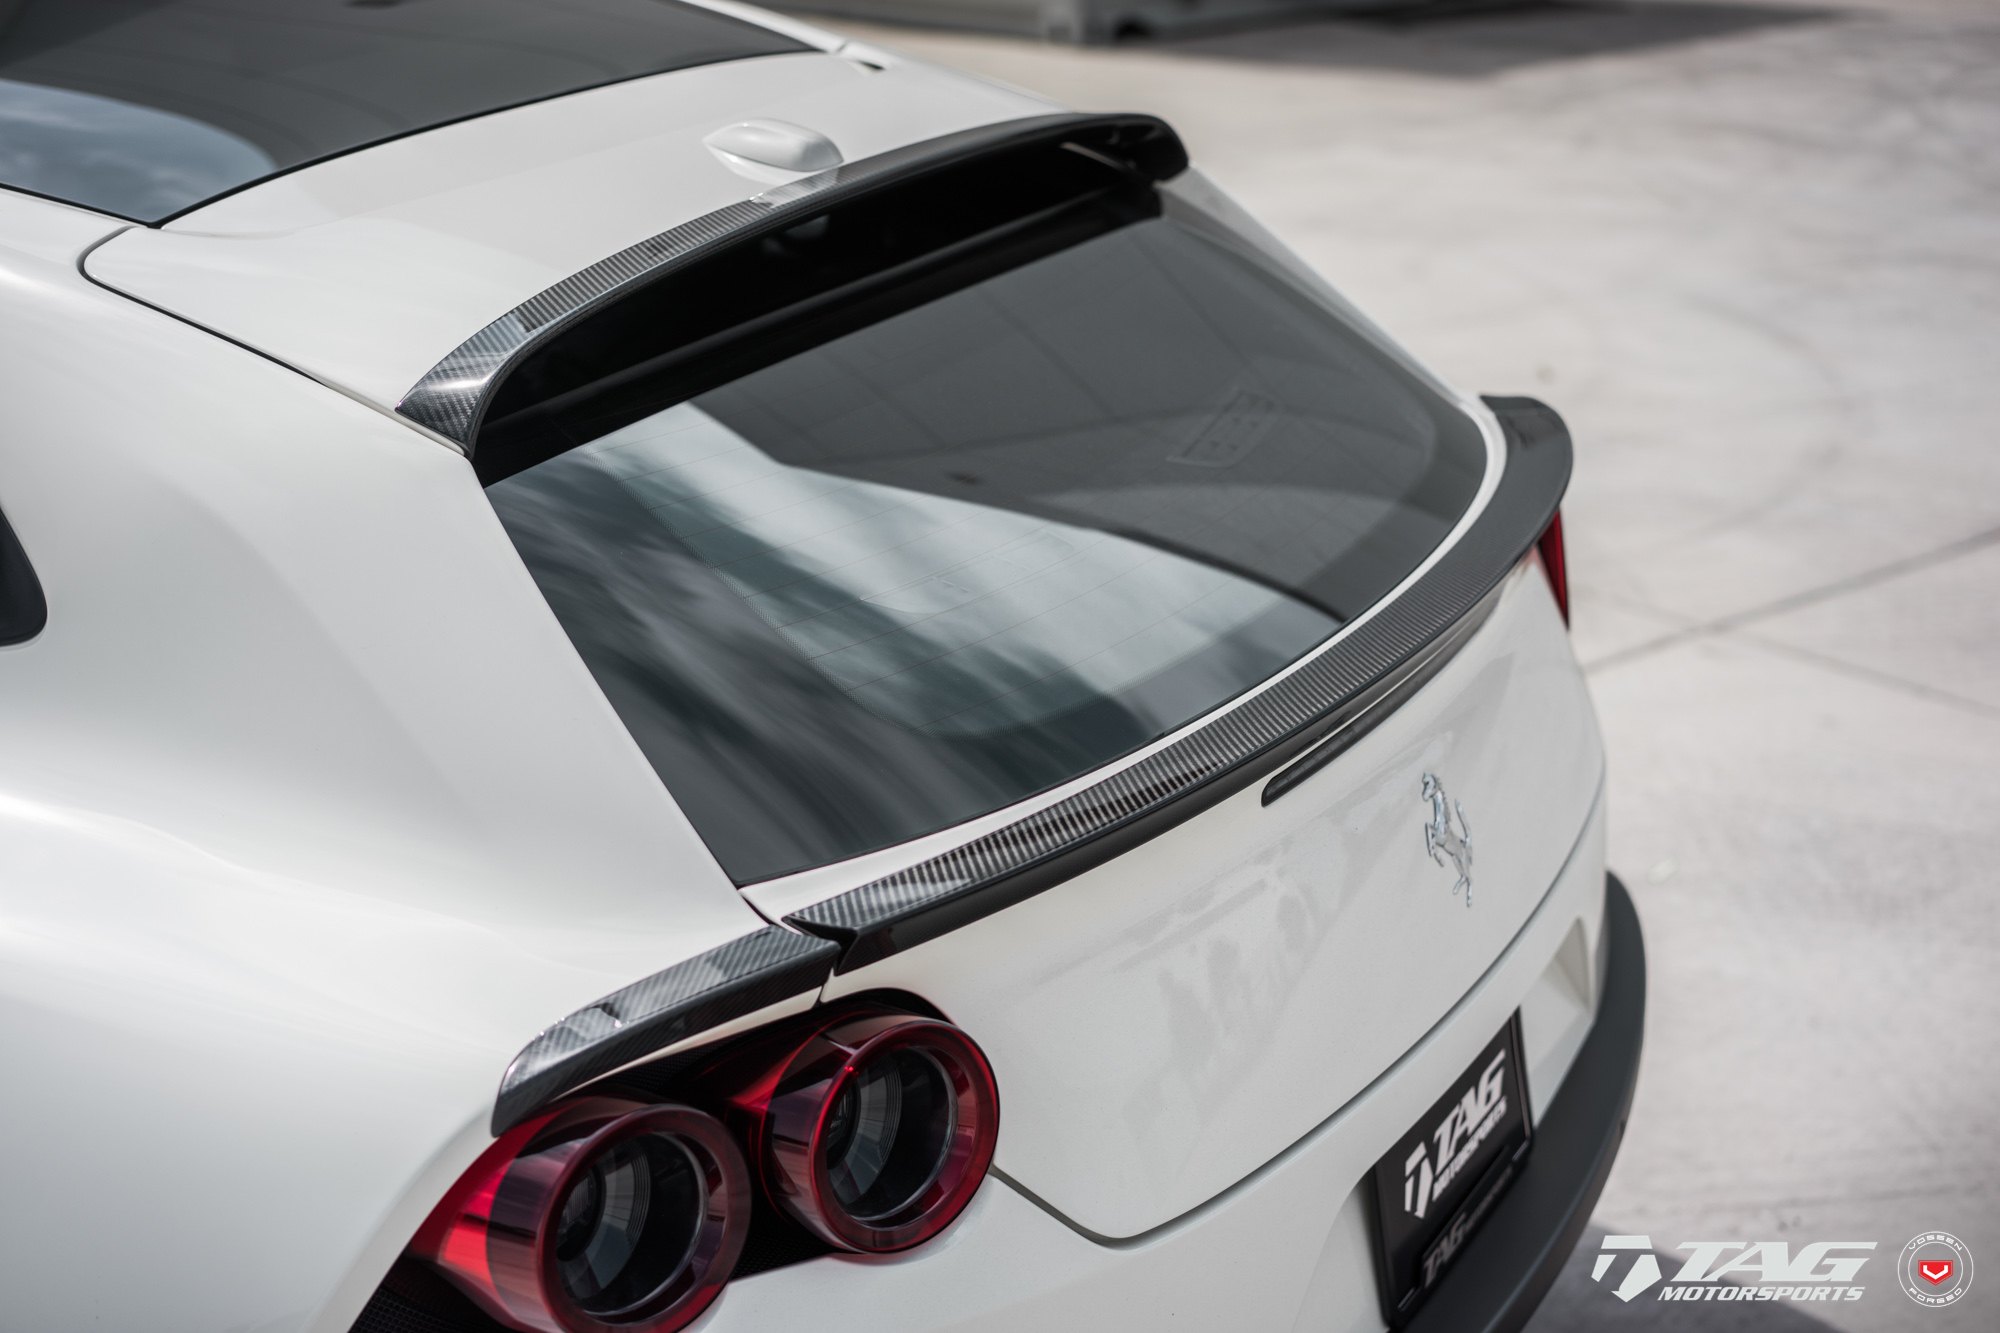 Carbon Fiber Rear Lip Spoiler on White Ferrari GTC4lusso - Photo by Vossen